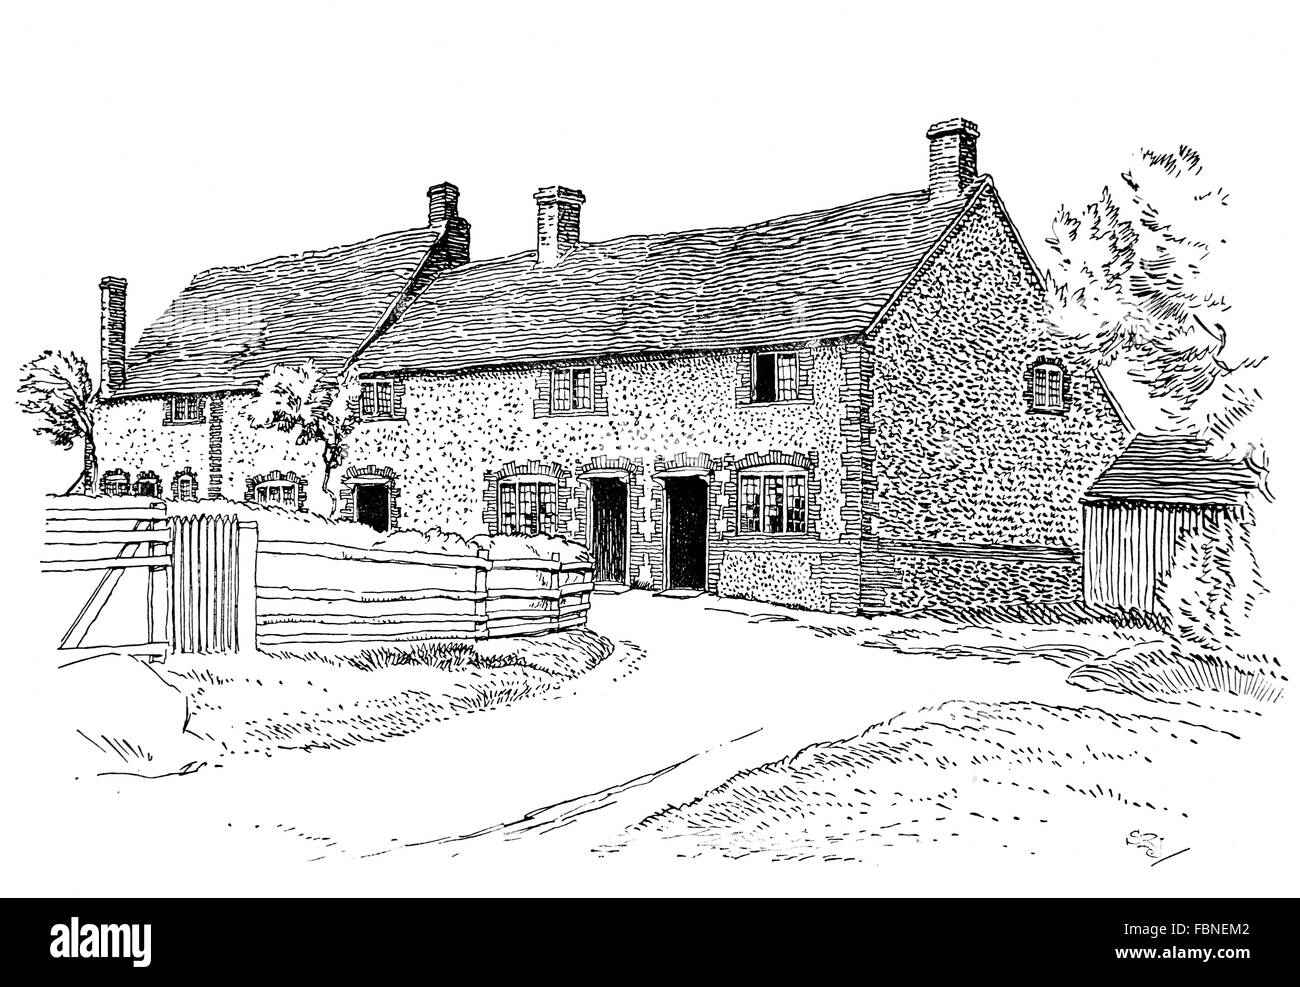 Großbritannien, England, Buckinghamshire, Downley, alten ländlichen Hütten, 1911 Linie Illustration von Sydney R Jones, aus dem Studio Magazin Stockfoto